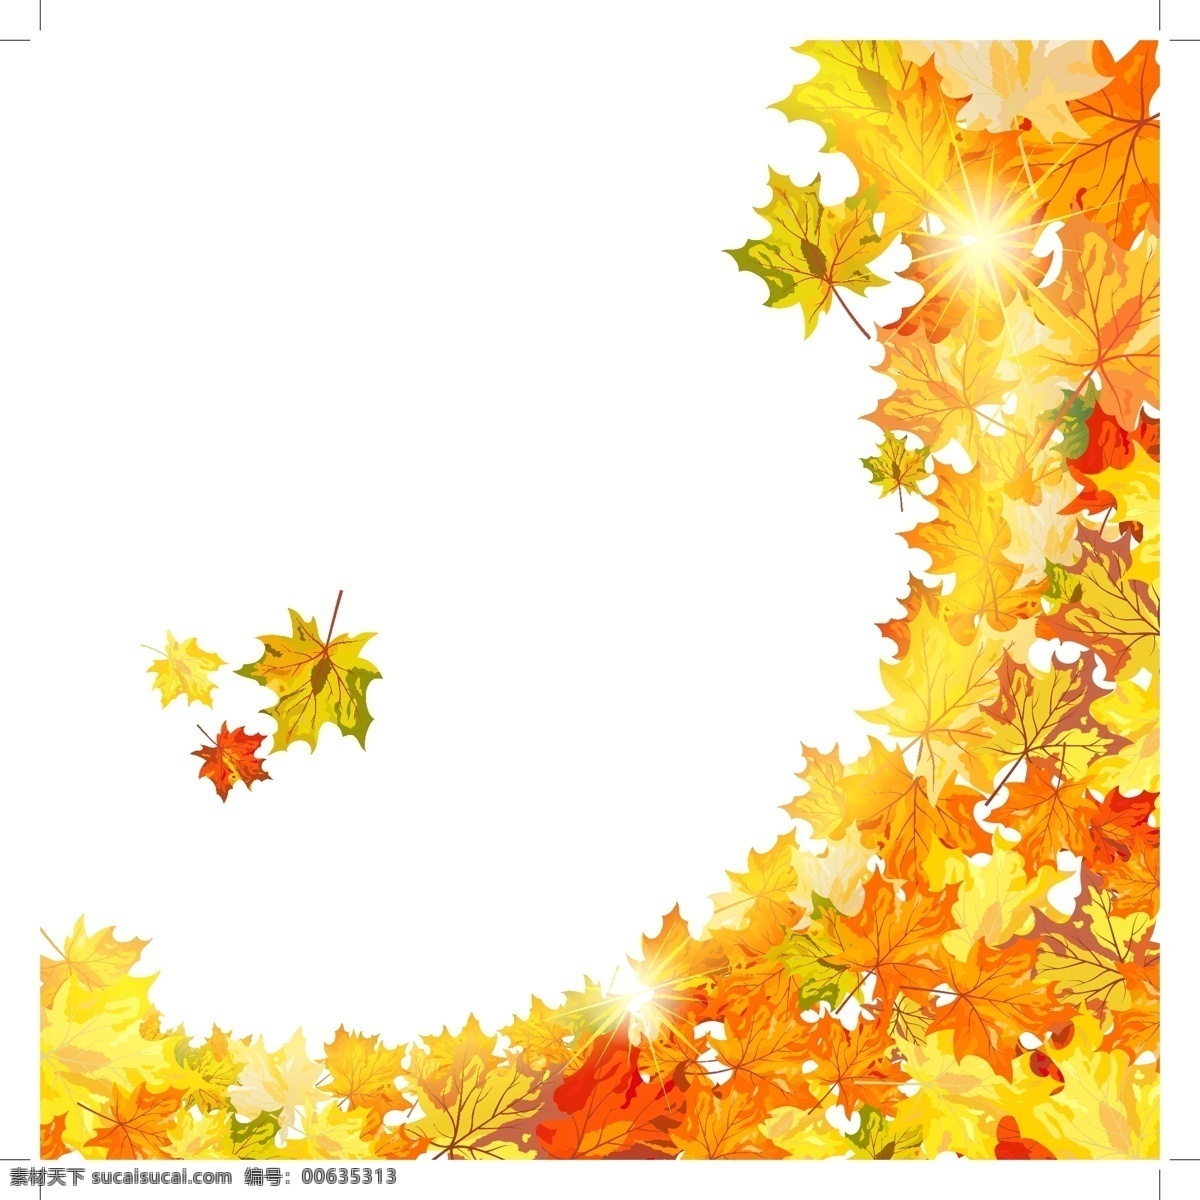 秋天树叶背景 枫叶 黄叶 叶子 秋天背景边框 秋季背景 底纹边框 矢量素材 白色